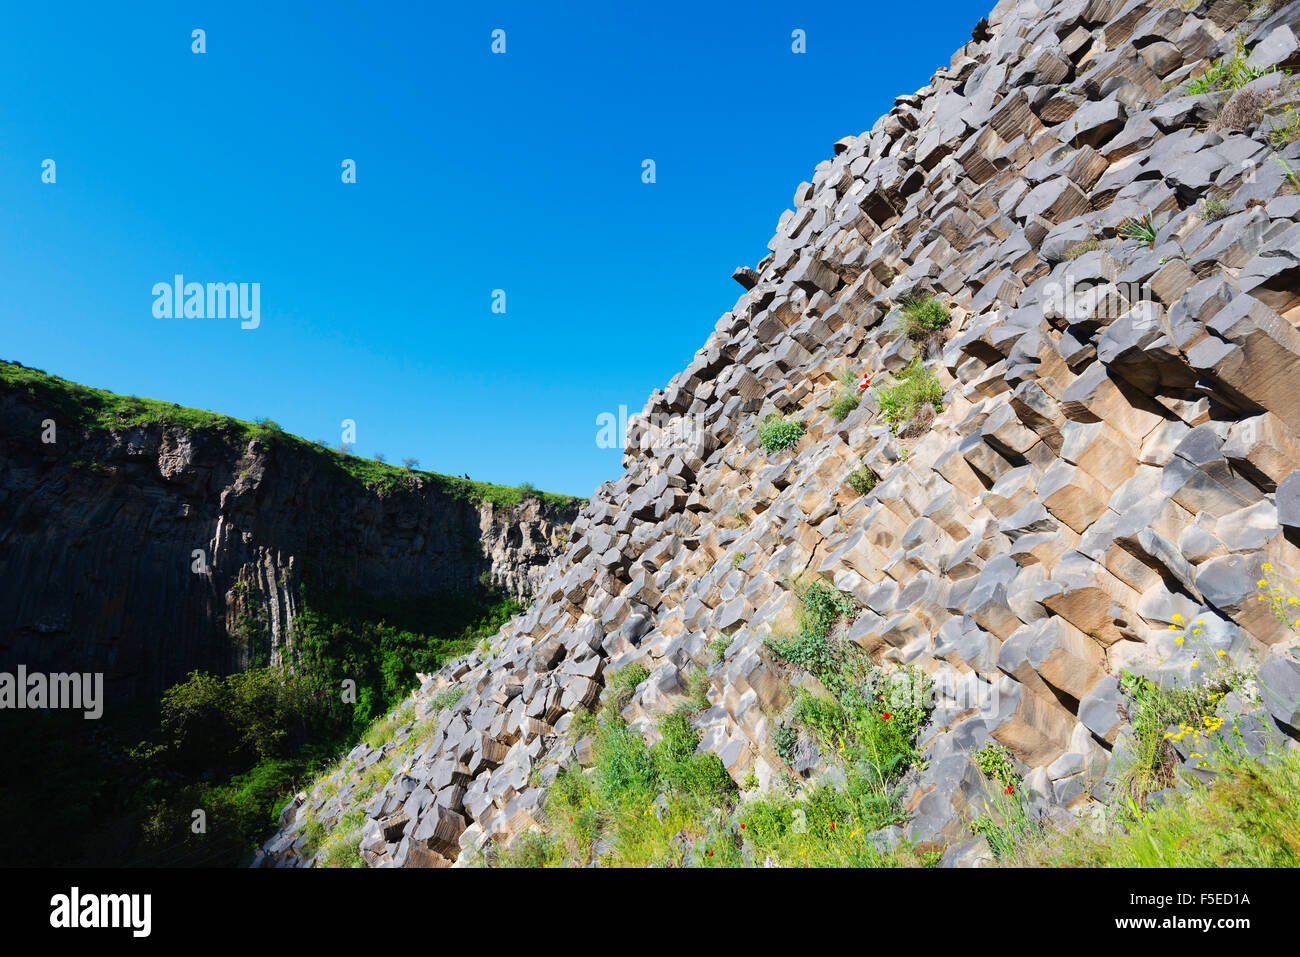 Symphonie de pierres, colonnes de basalte, UNESCO World Heritage Site, Garni, province de Kotayk, Arménie, Caucase, Asie centrale, Asie Banque D'Images